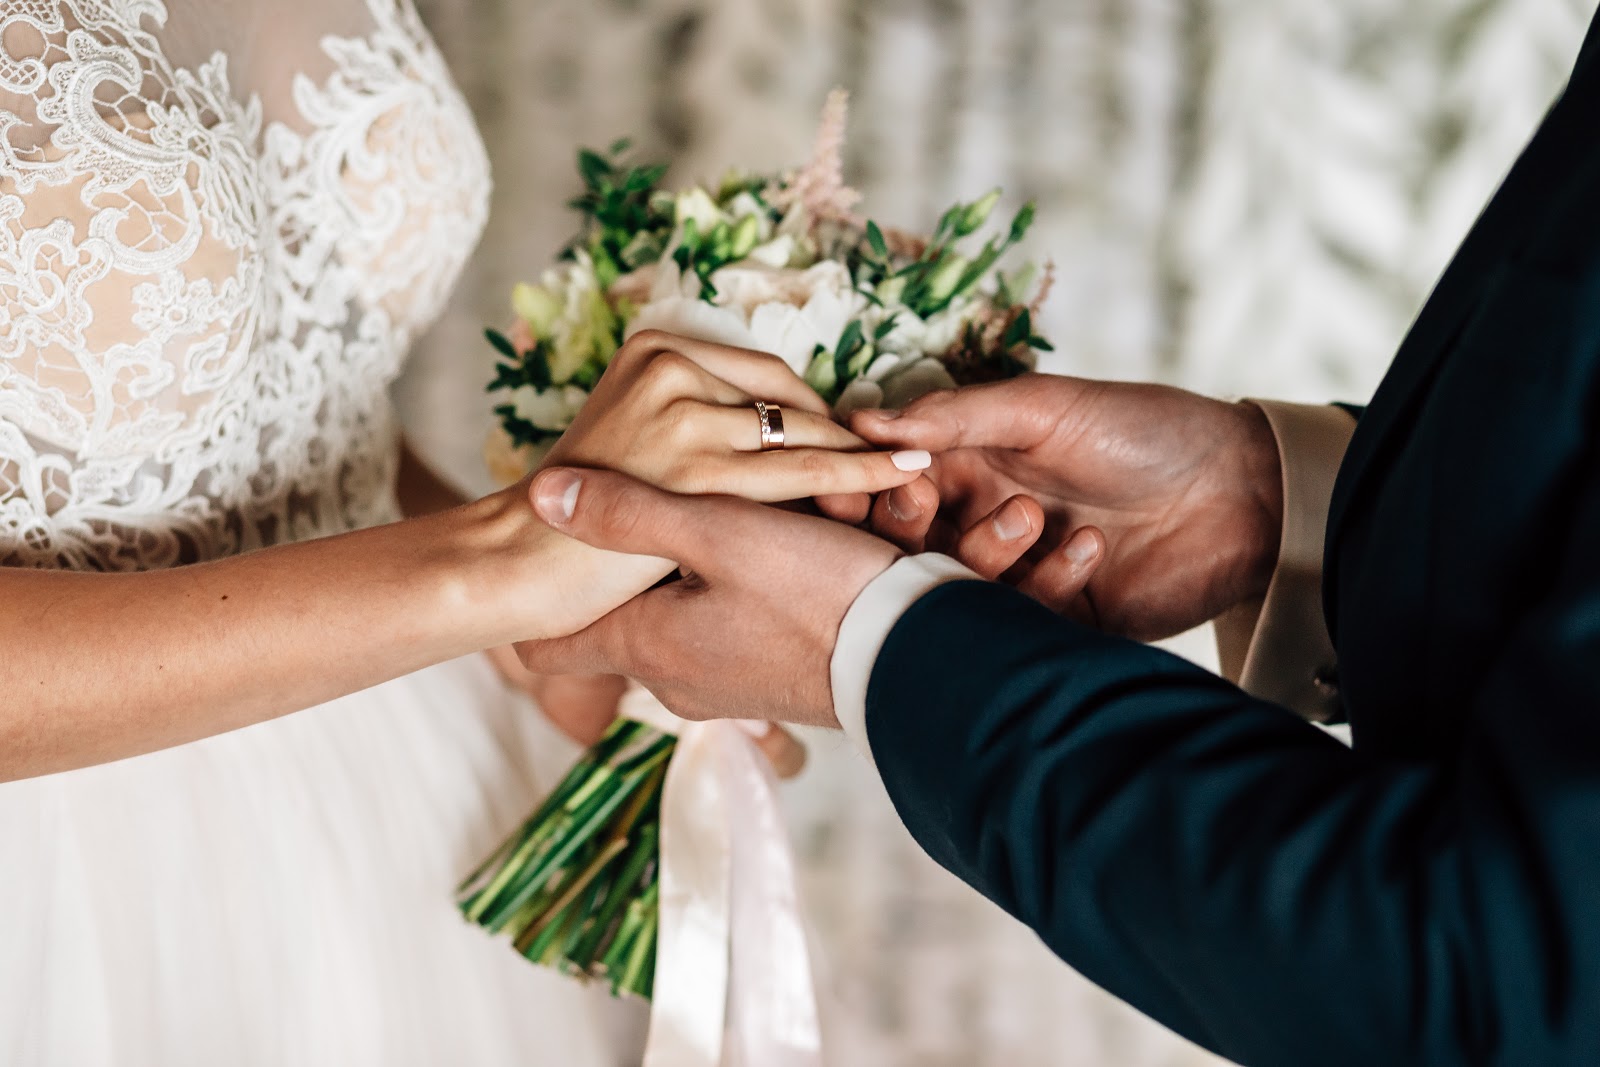 Đeo nhẫn cưới trước có sao không? Những lưu ý quan trọng